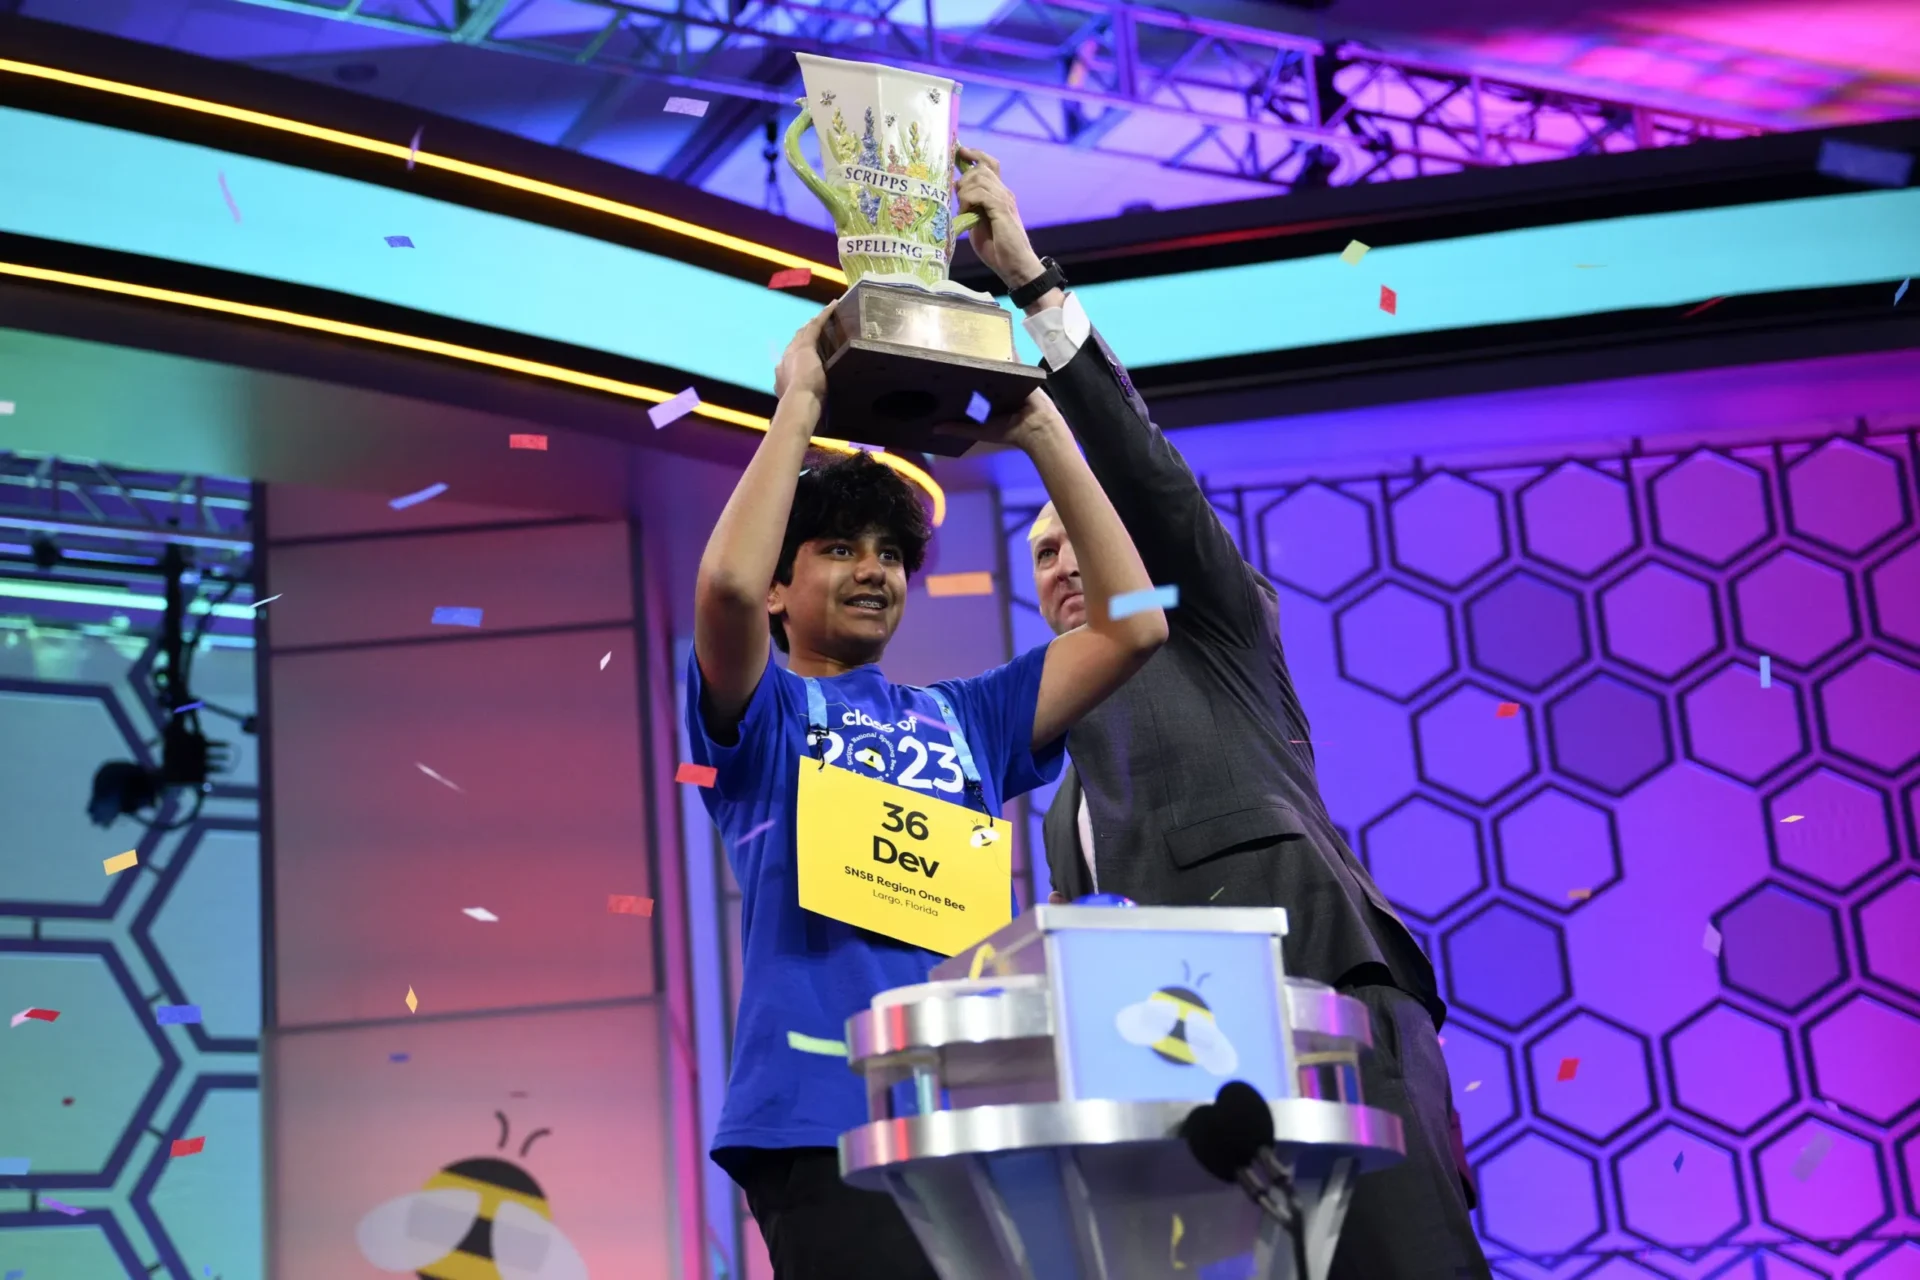 Finales del Scripps National Spelling Bee: el mejor deletreador será coronado